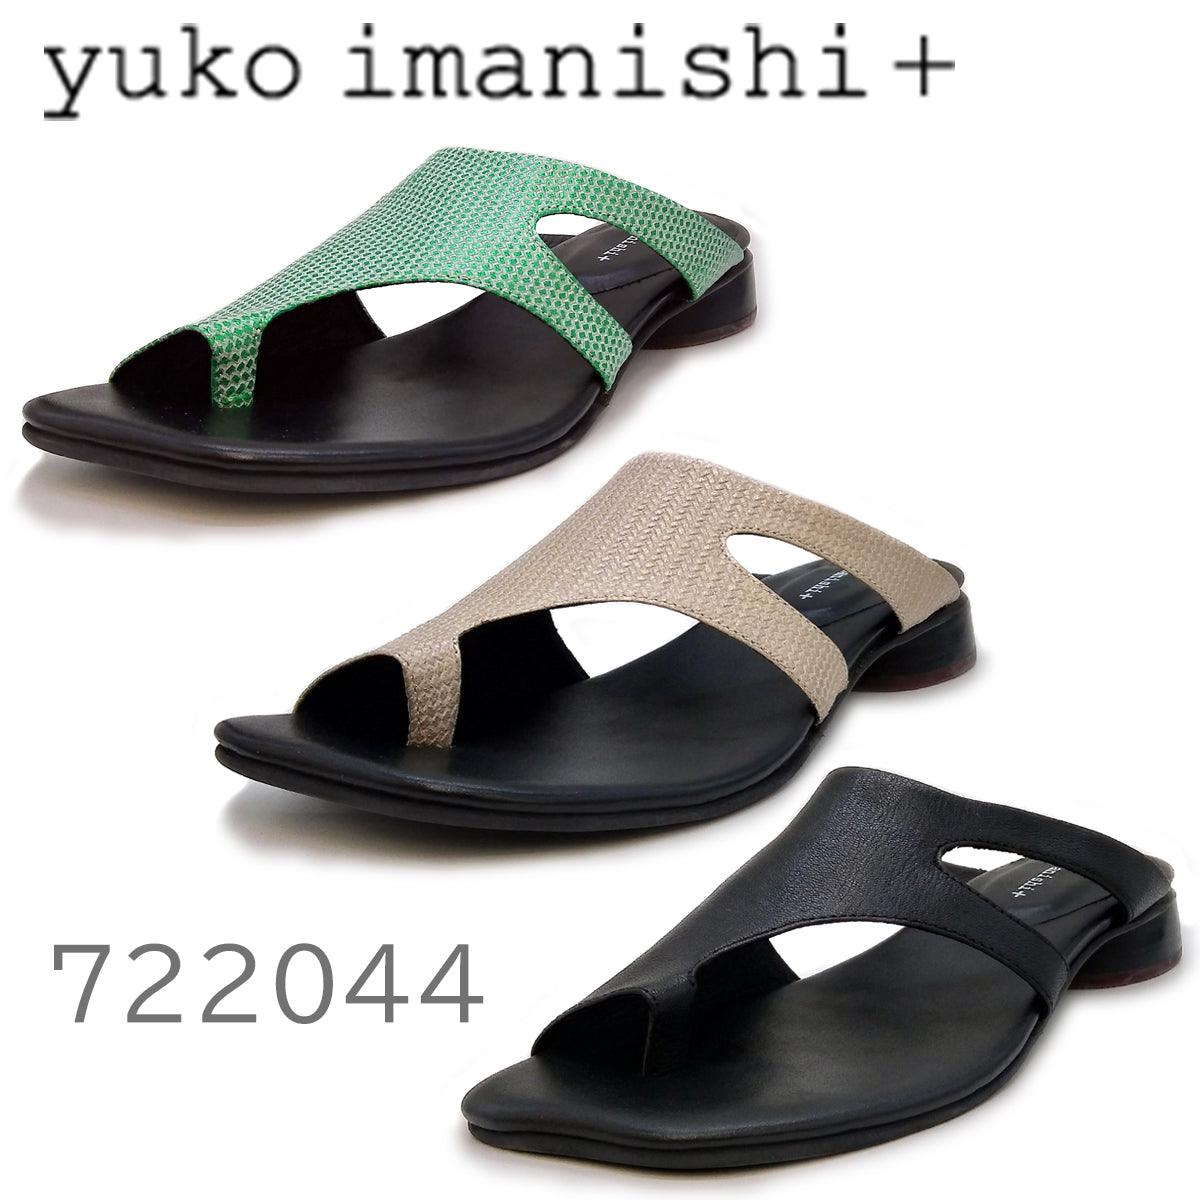 yuko imanishi +レディース 722044 - yuko imanishi +（ユウコイマニシプラス） - 202シューズモリ オンラインショップ